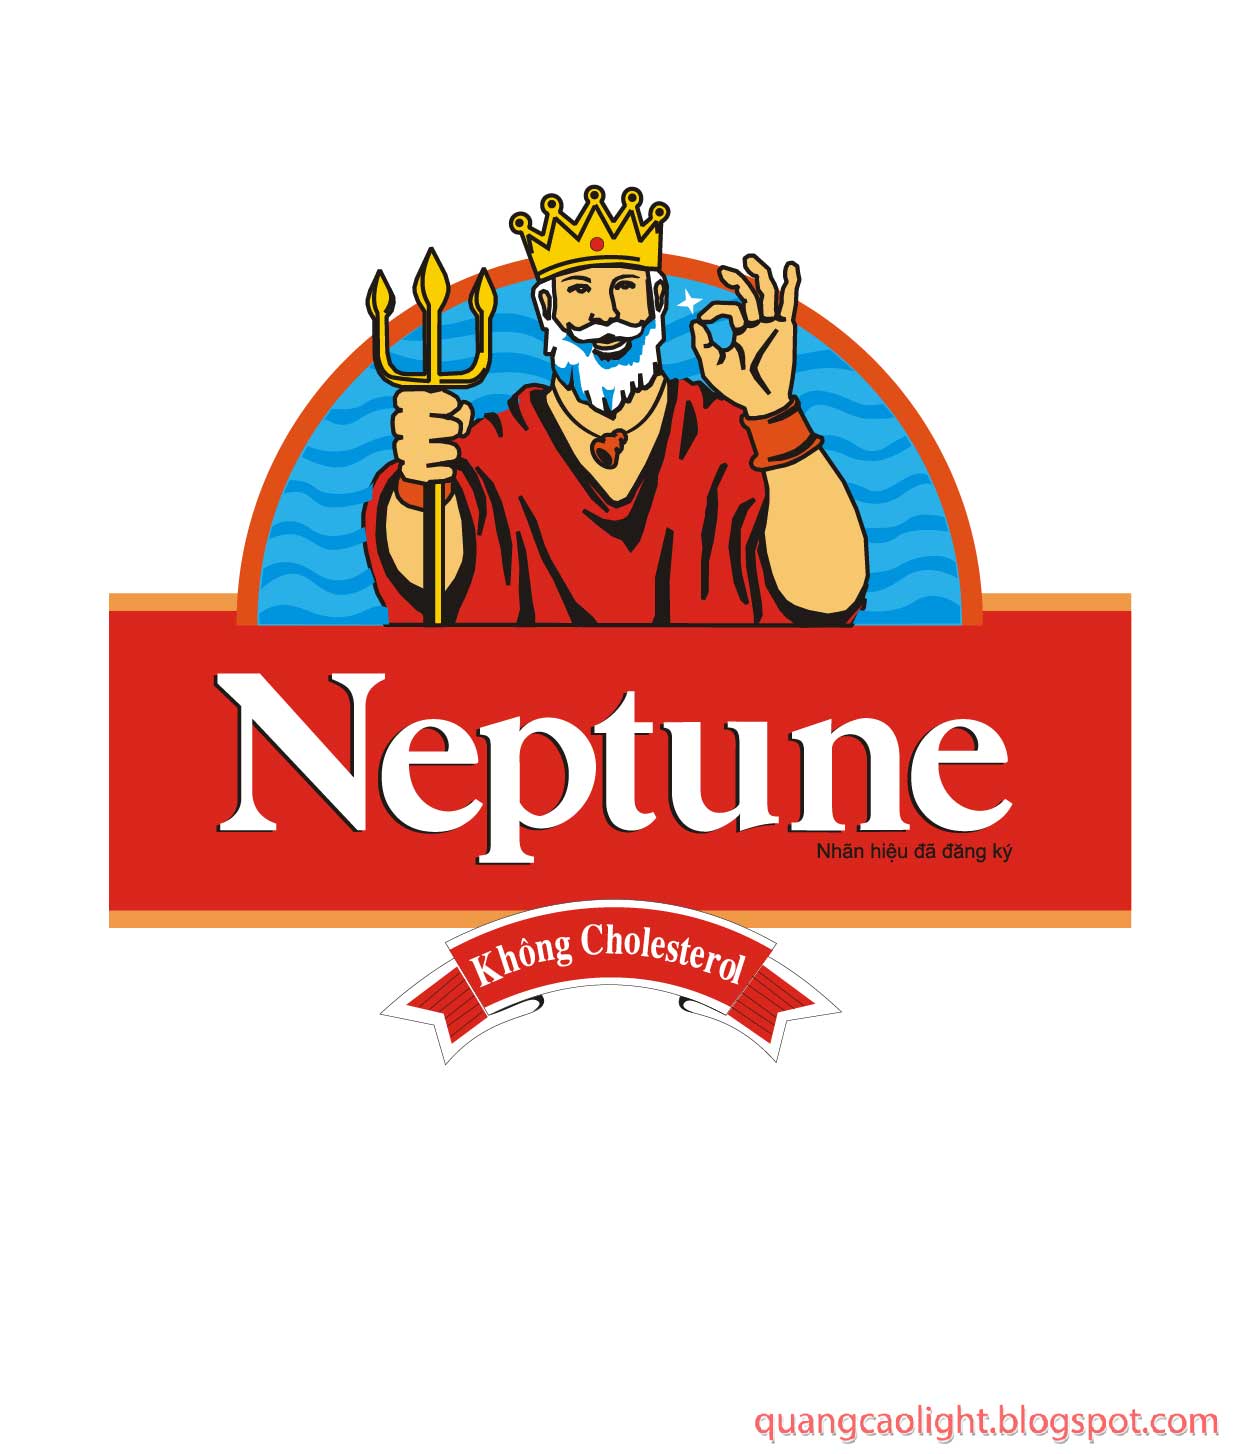 Neptune Logo - Neptune Logos